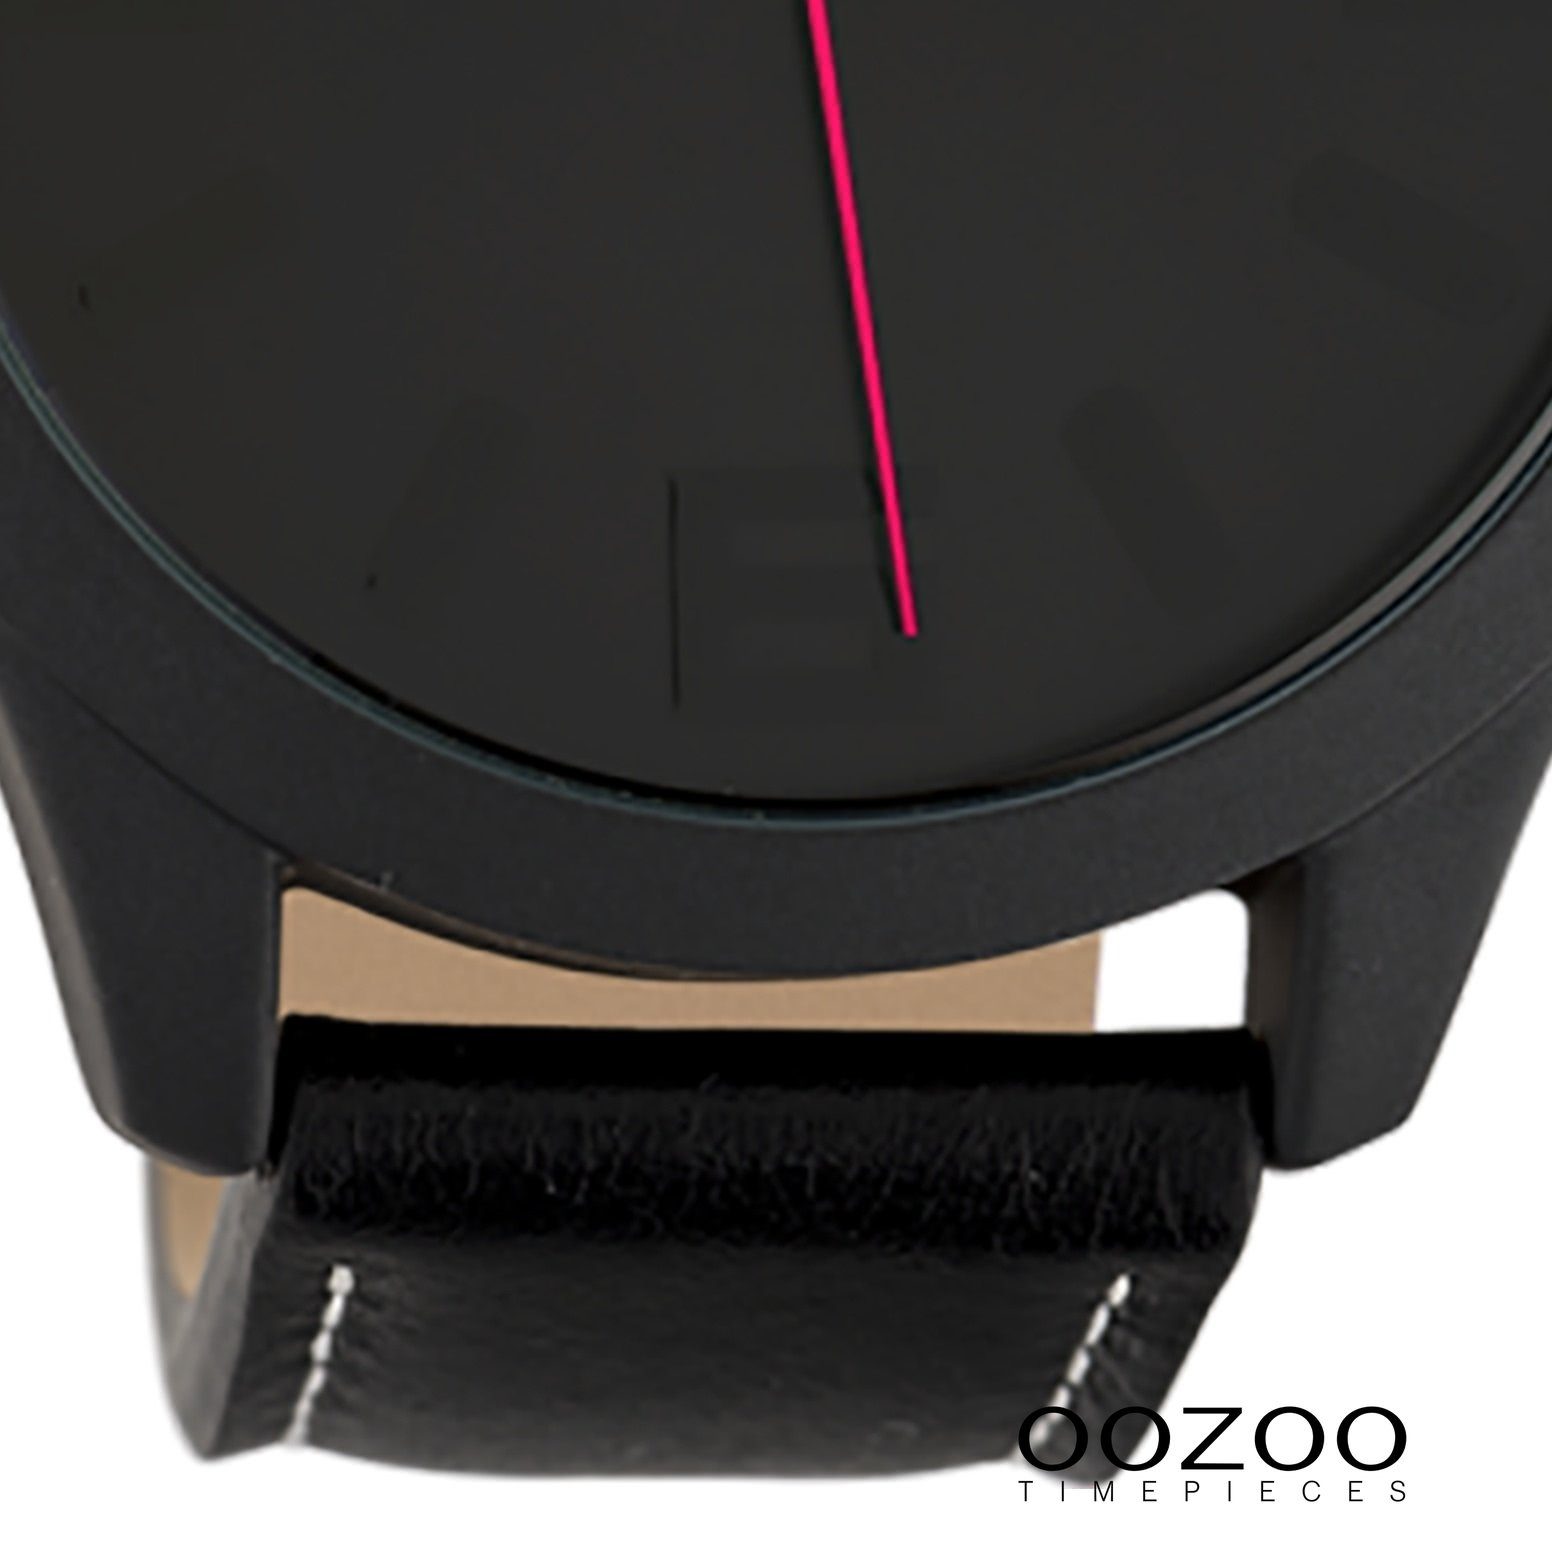 Damen Damenuhr Quarzuhr Oozoo OOZOO Lederarmband, groß (ca. schwarz, rund, 45mm) Armbanduhr Fashion-Style